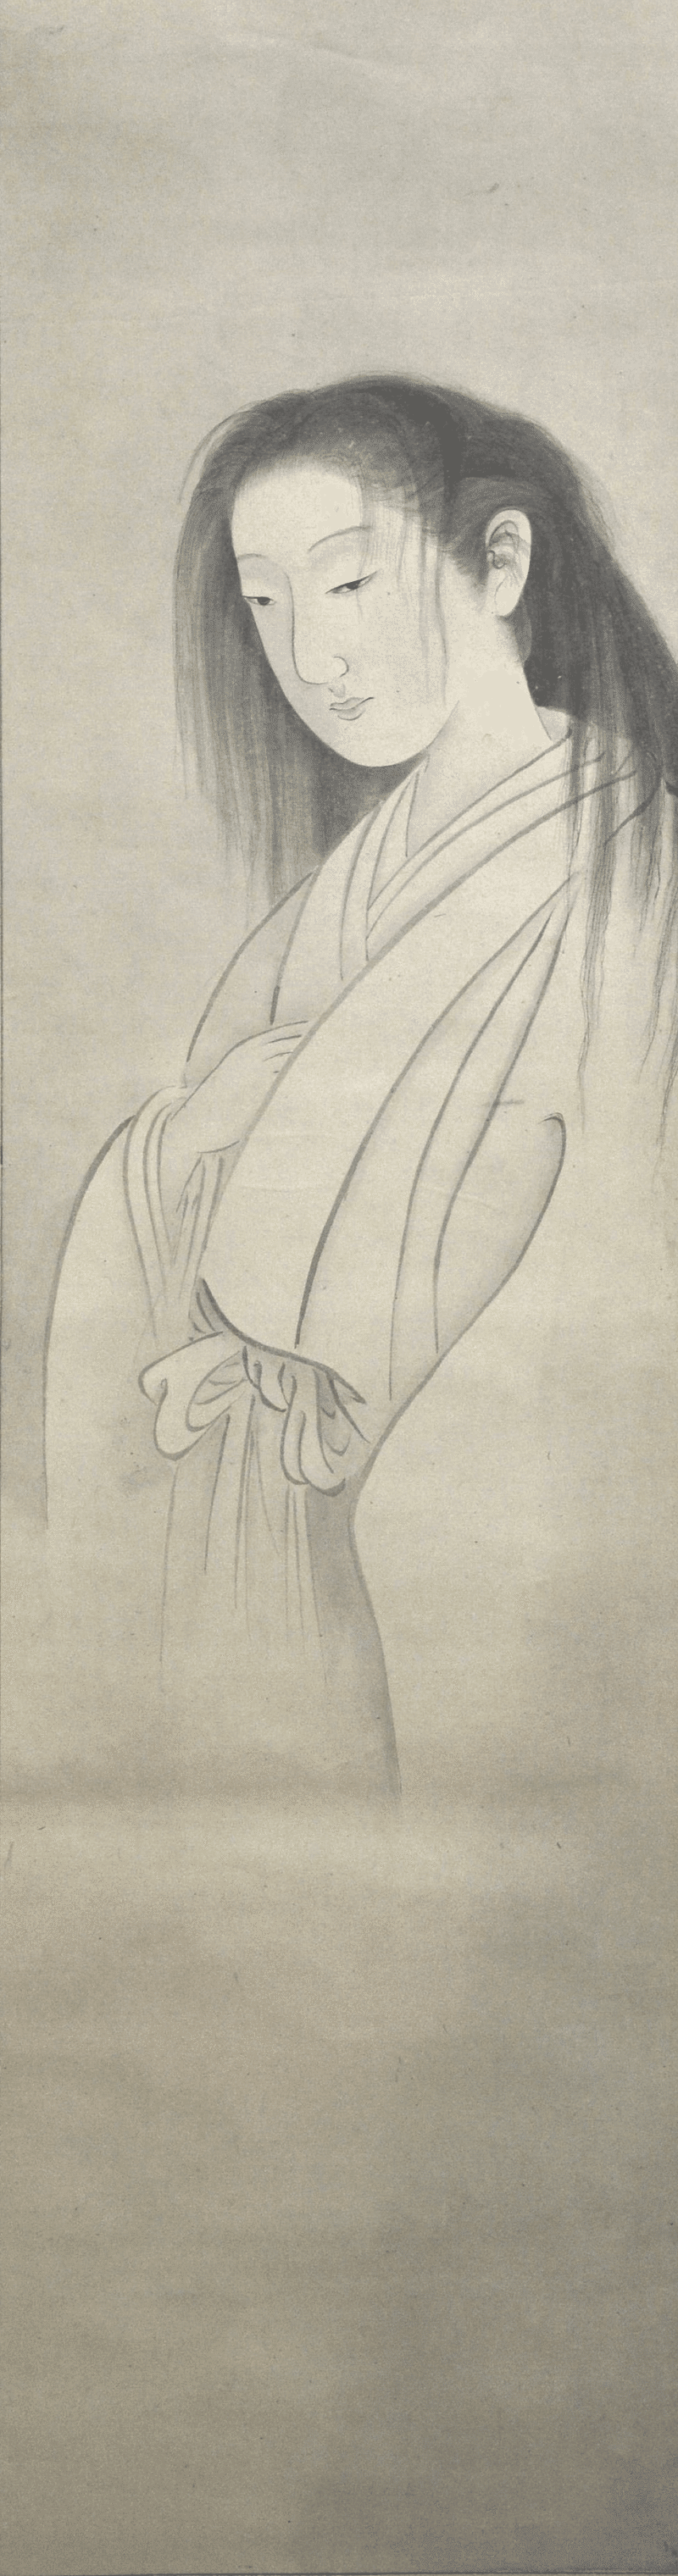 伝・円山応挙『幽霊図』。足のない女性の幽霊が描かれている。